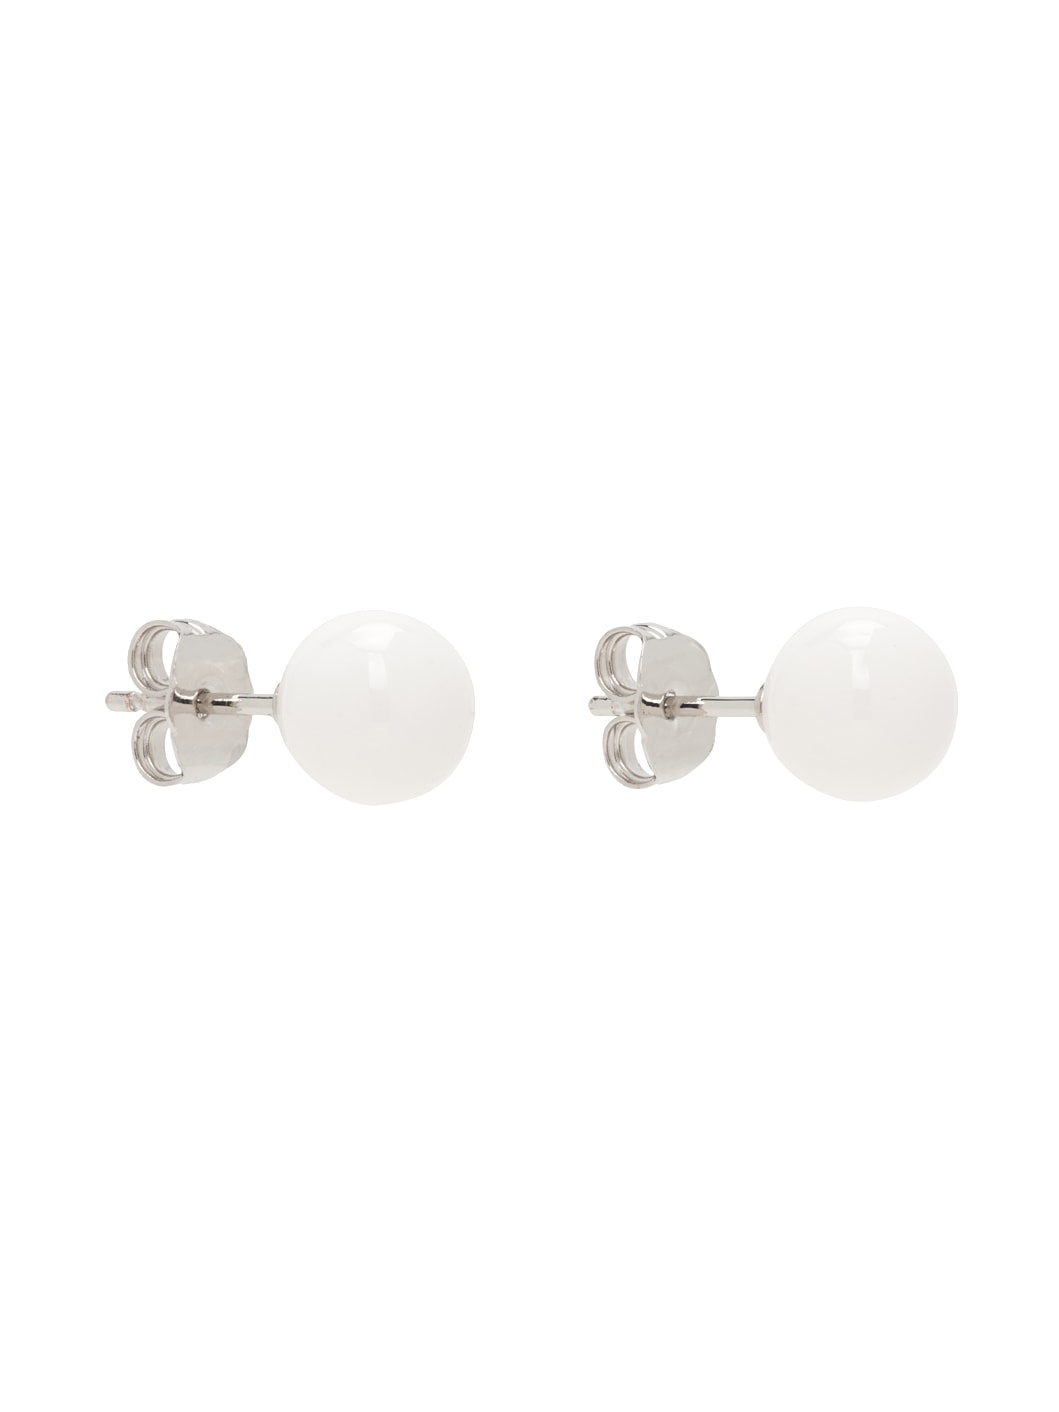 Silver & White Stud Earrings - 2